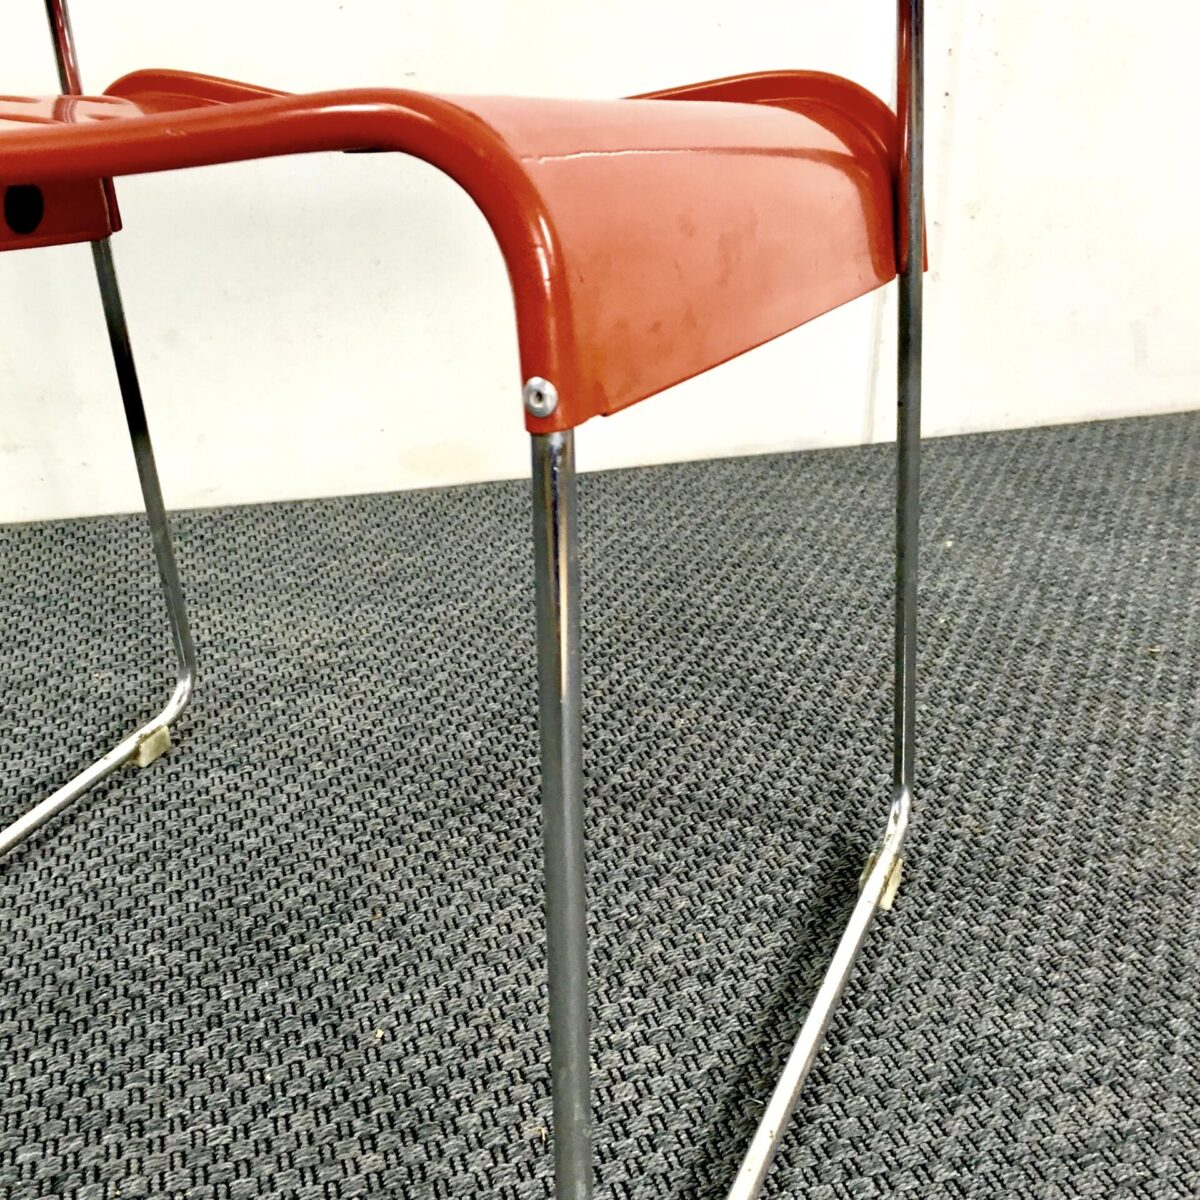 Einzelner Metall gartenstuhl von rodney kinsman für biffeplast. Midcentury Stuhl Metall gestell verchromt lehne und Sitz Metall rot lackiert.